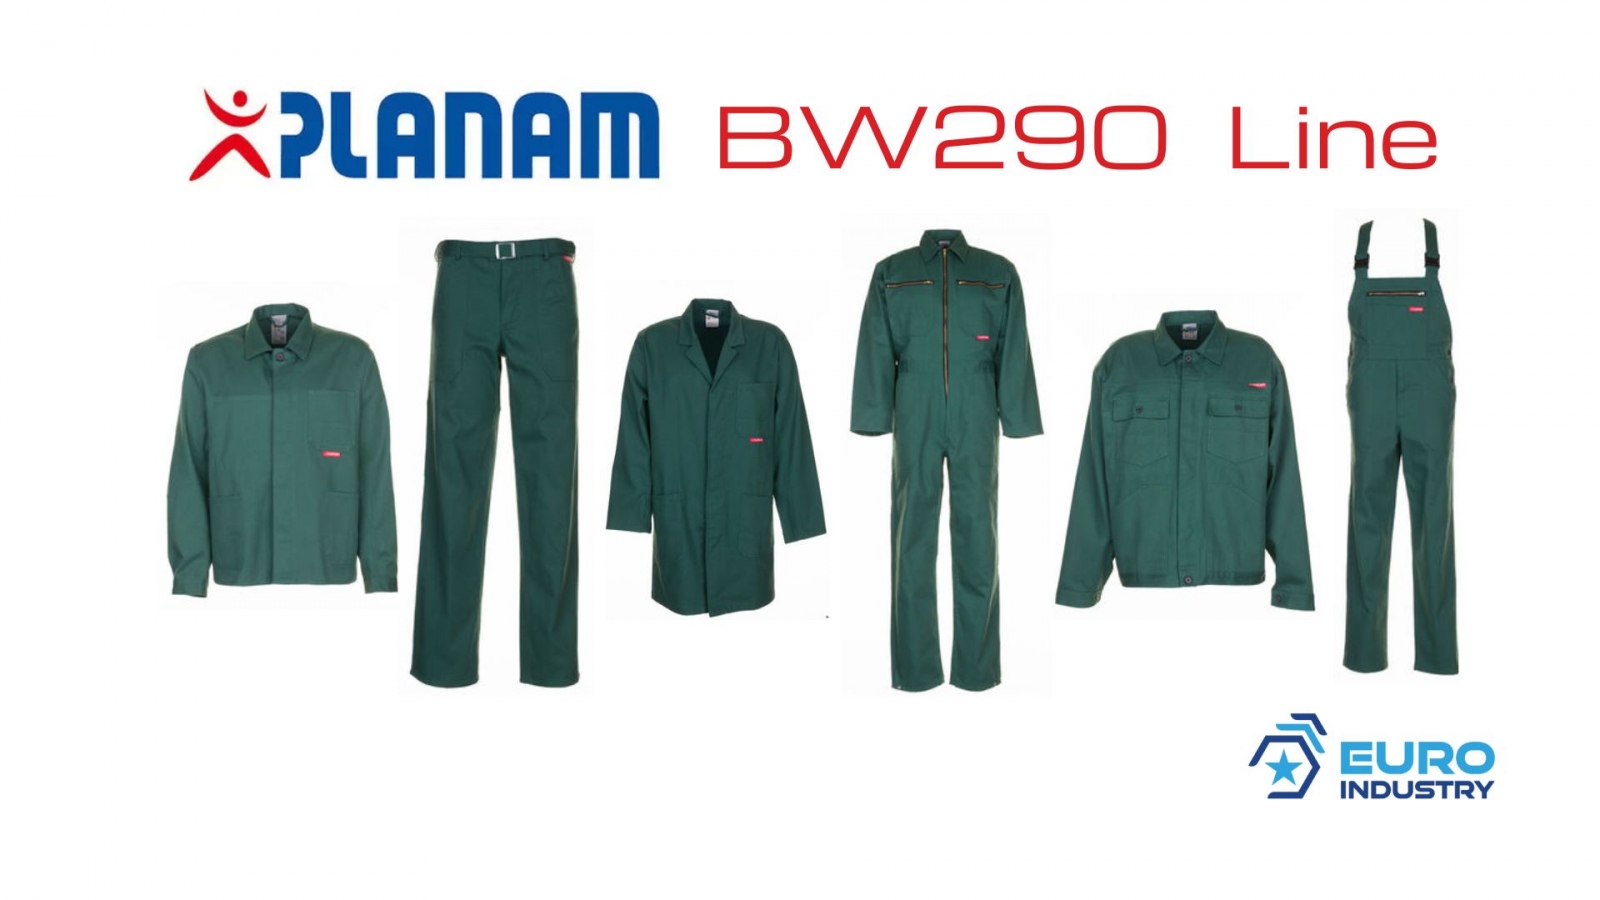 pics/Planam/0129/planam-bw-290-linie-mittelgruen-baumwolle-details.jpg